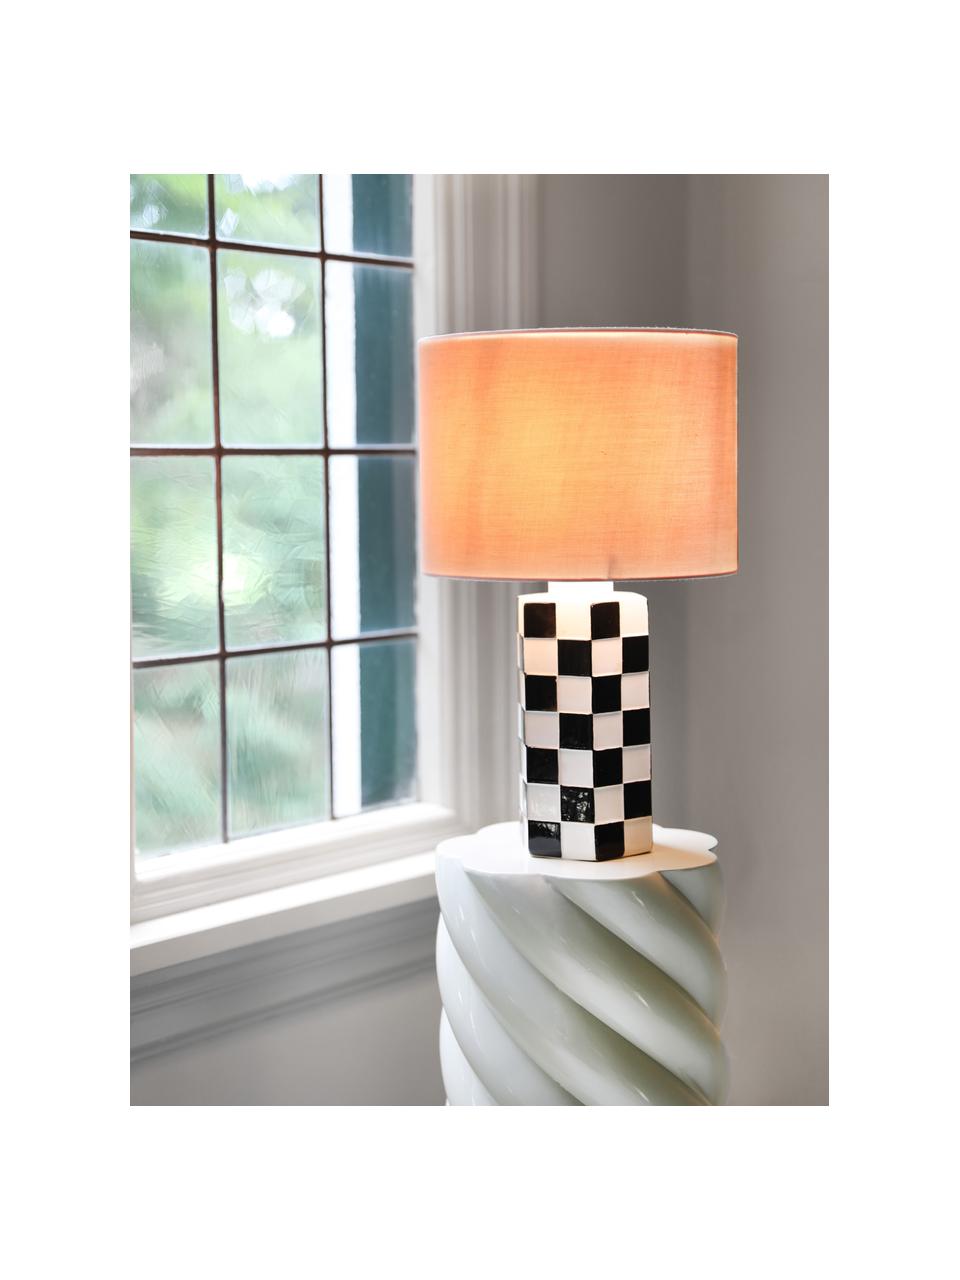 Lampada da tavolo con motivo a scacchiera Check, Paralume: cotone, Base della lampada: gres, Rosa chiaro, bianco, nero, Ø 25 x Alt. 42 cm